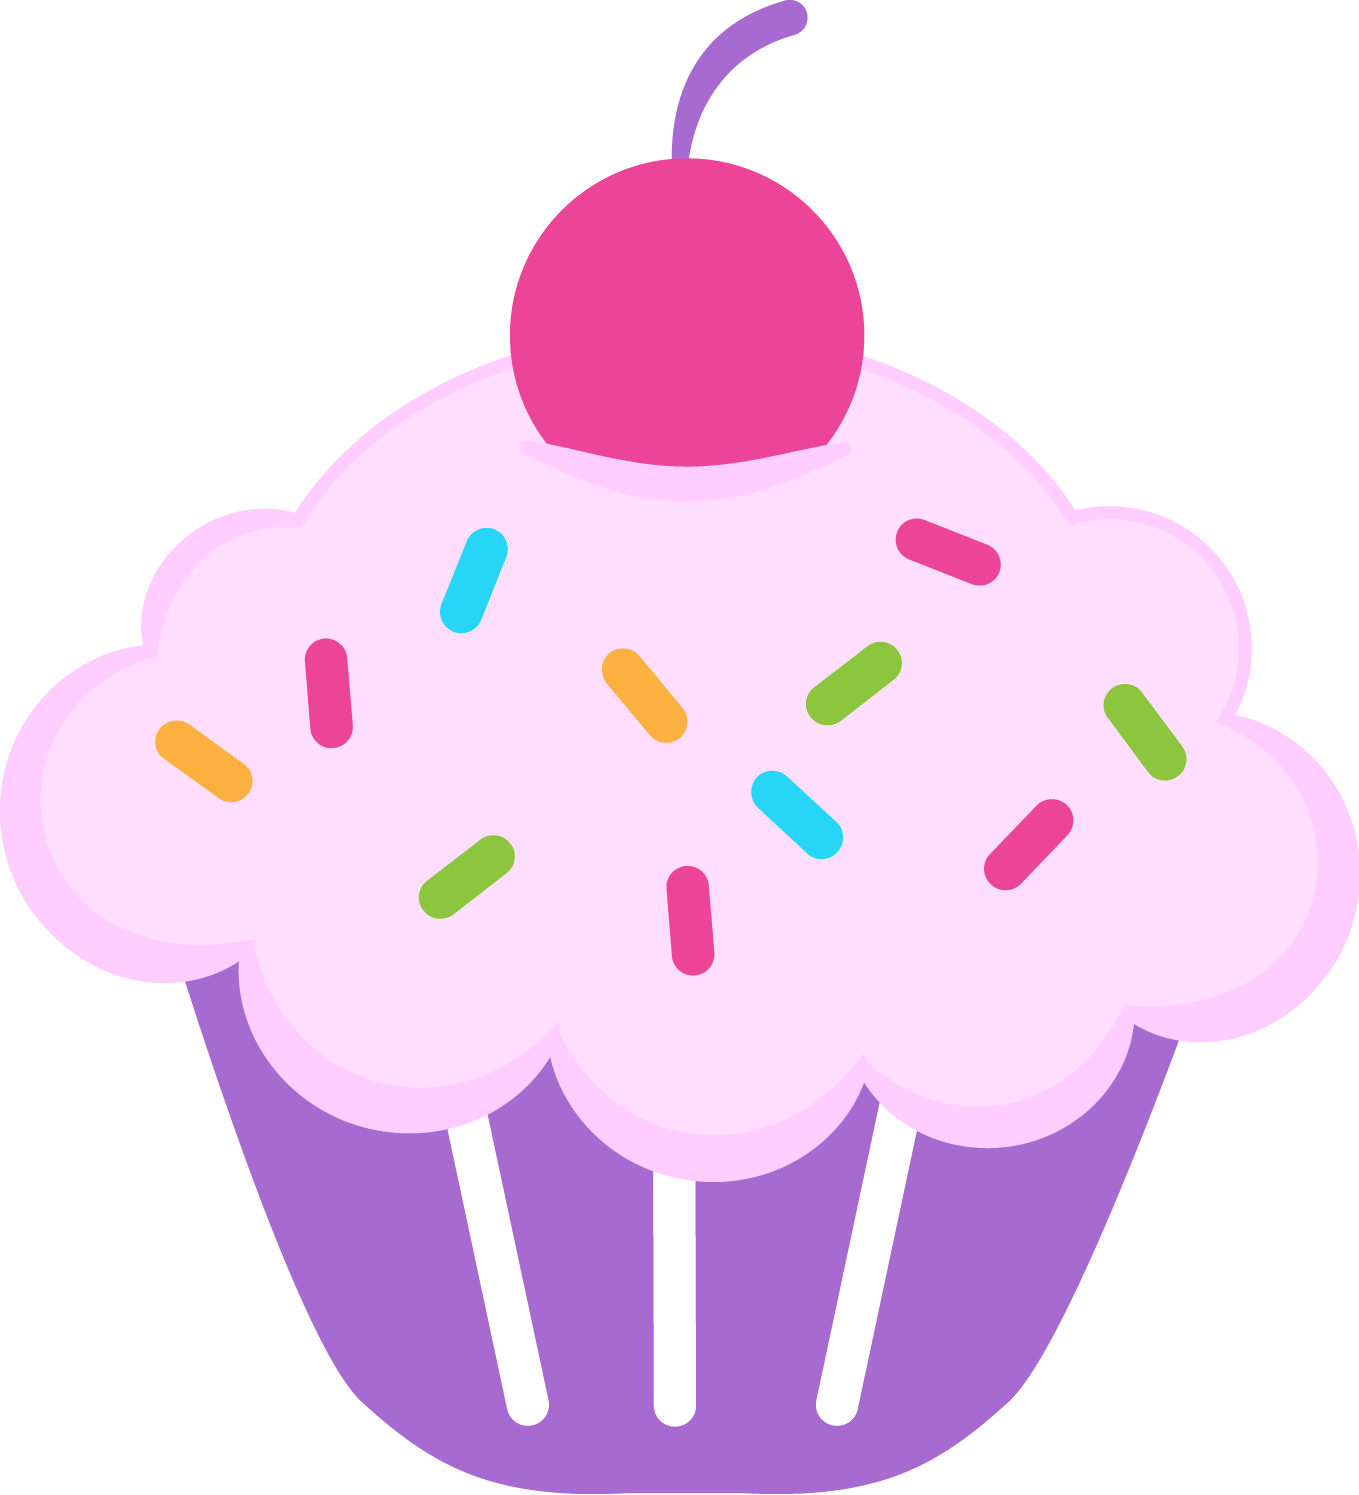 ... Cute Cupcake Clip Art - C